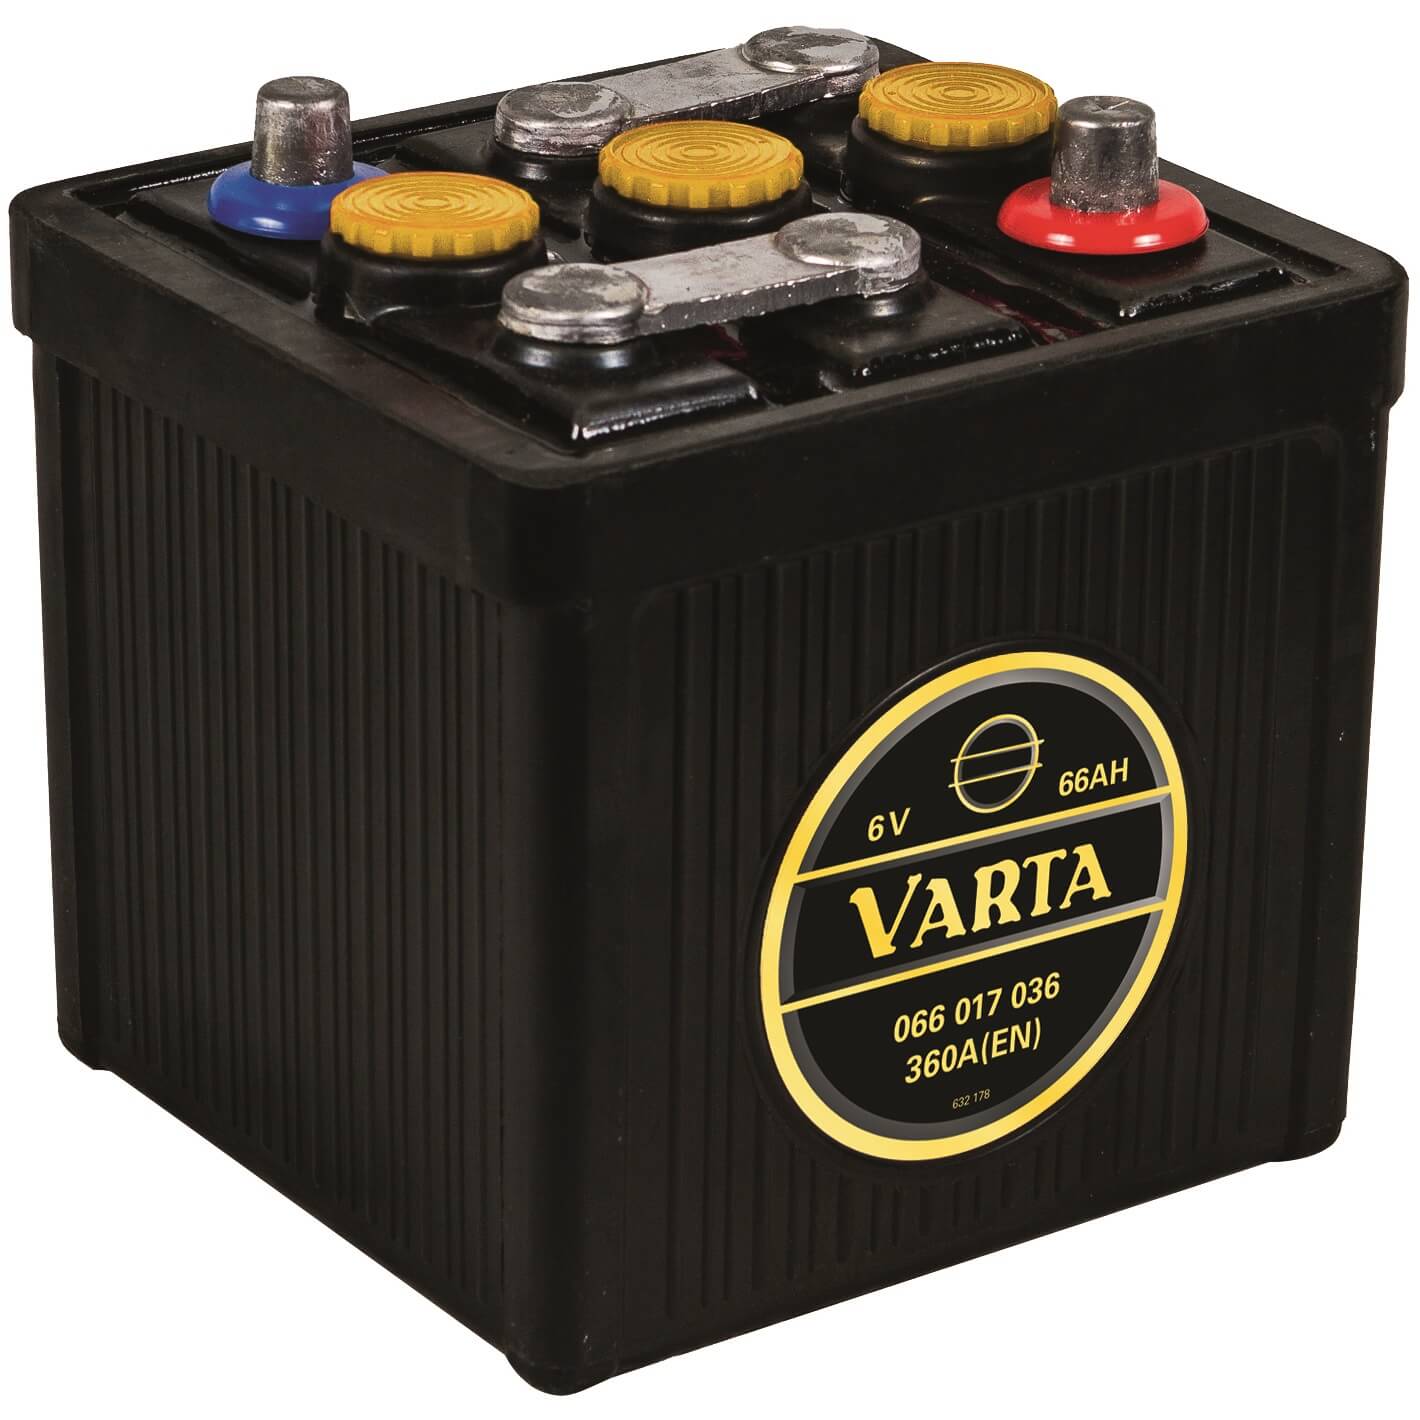 Varta Classic Oldtimer 06617 6V 66Ah 360A/EN